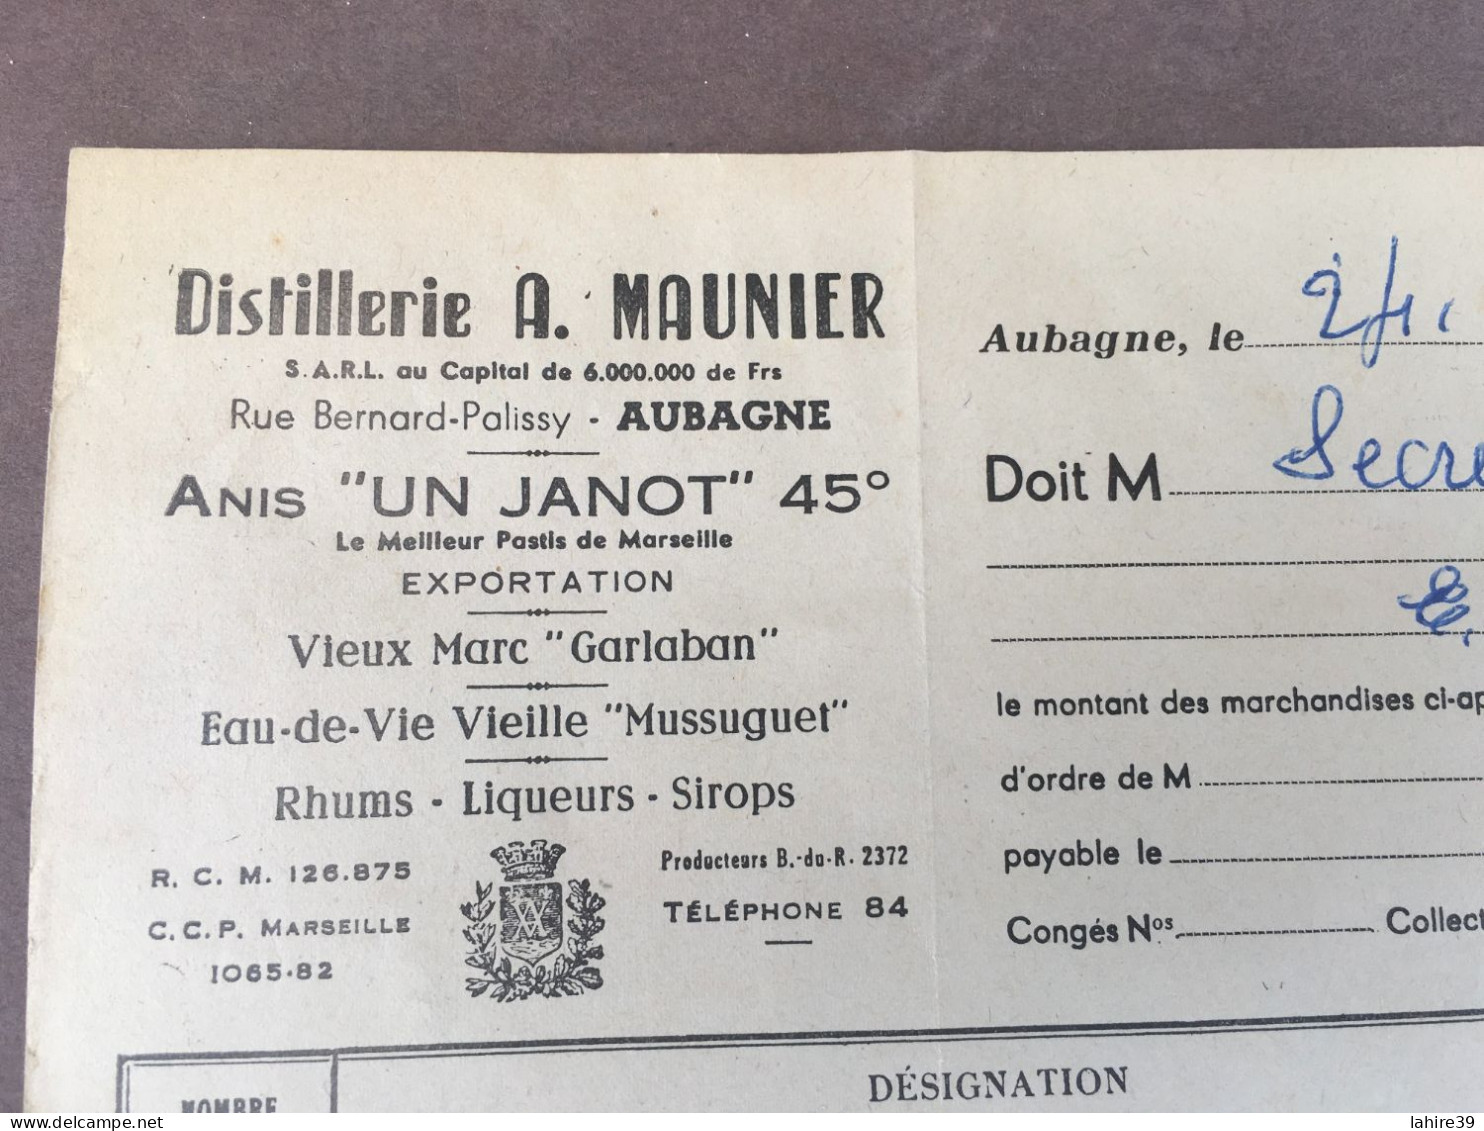 Facture / Distillerie A. Maunier / Aubagne / Alcool / Anis Janot 45 / 1955 - Lebensmittel